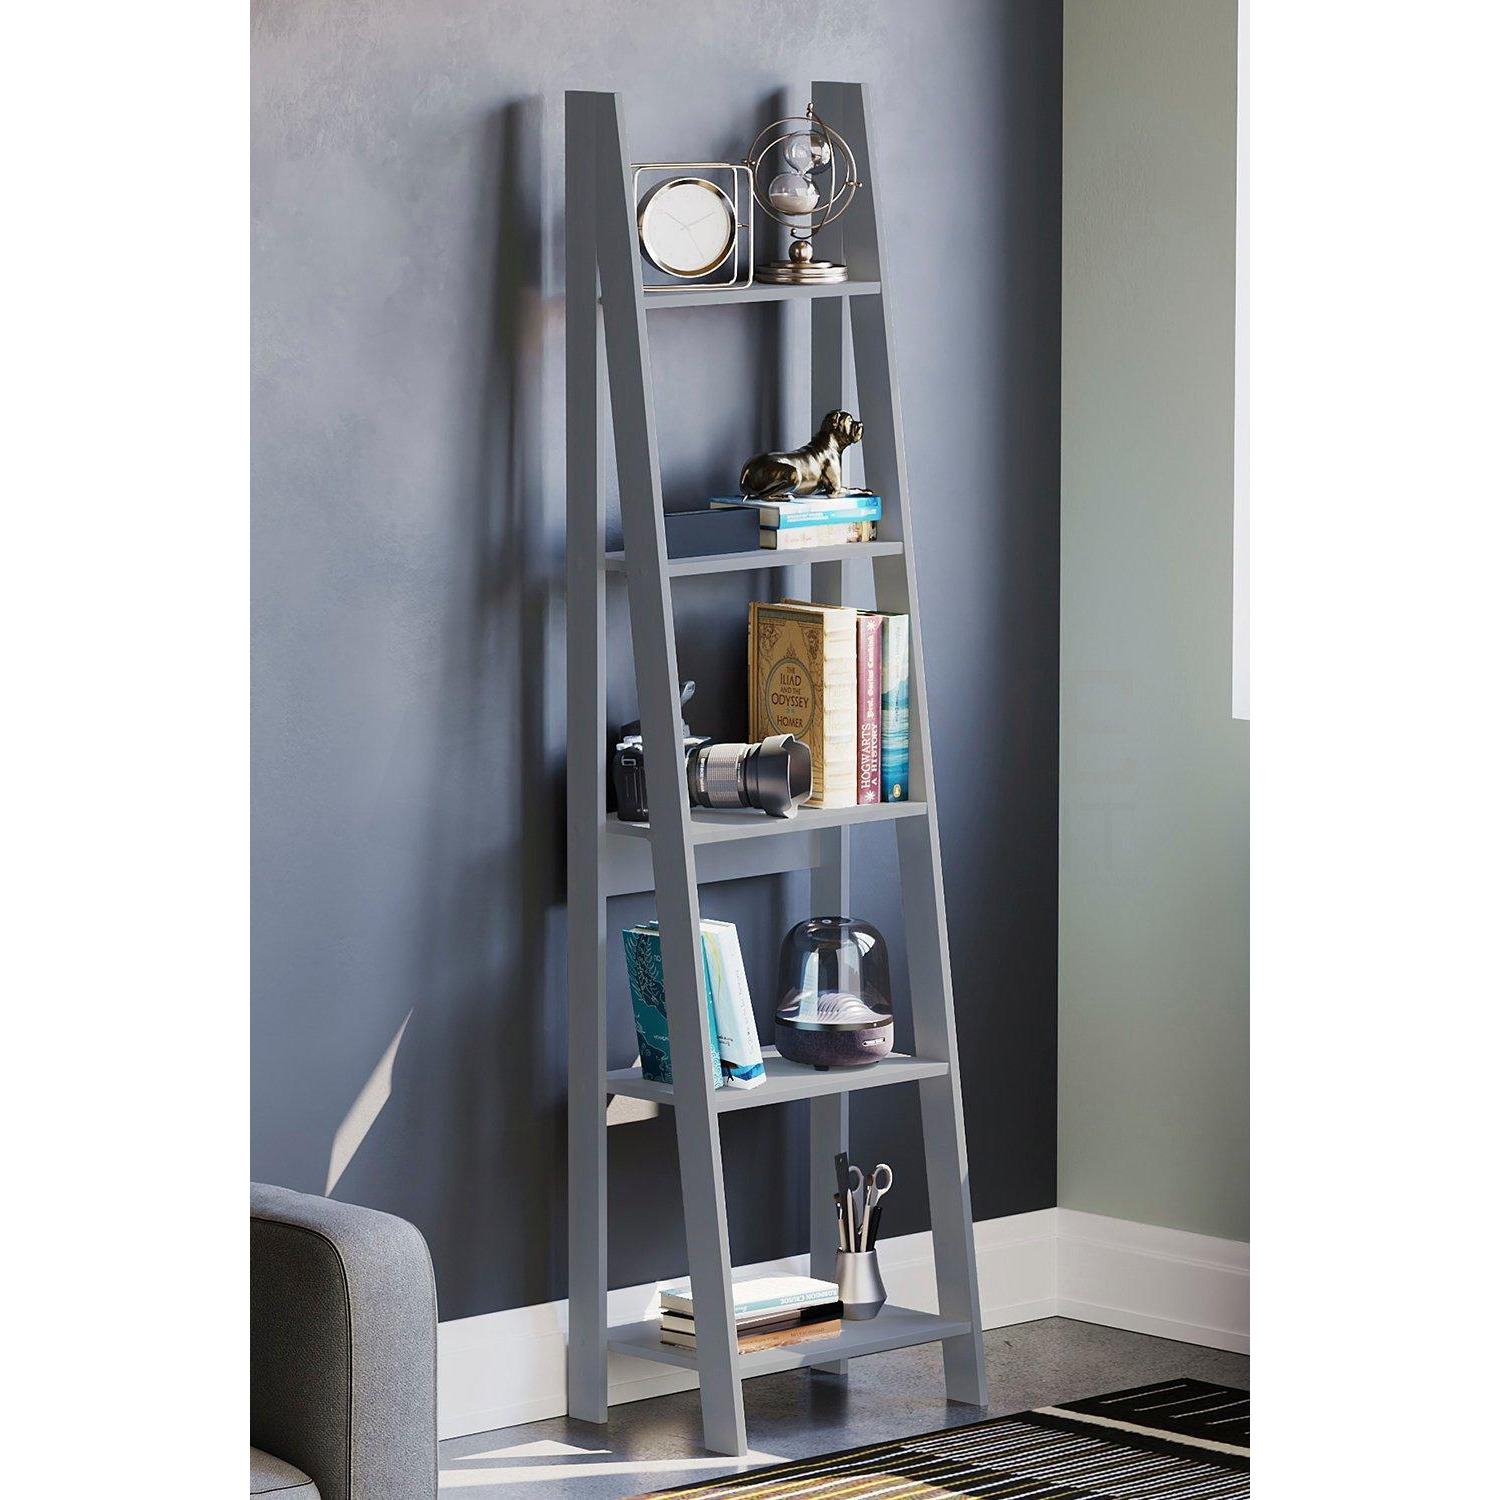 Vida Designs Bristol 5 Tier Step Ladder Bookcase Storage 1755 x 460 x 385 mm - image 1